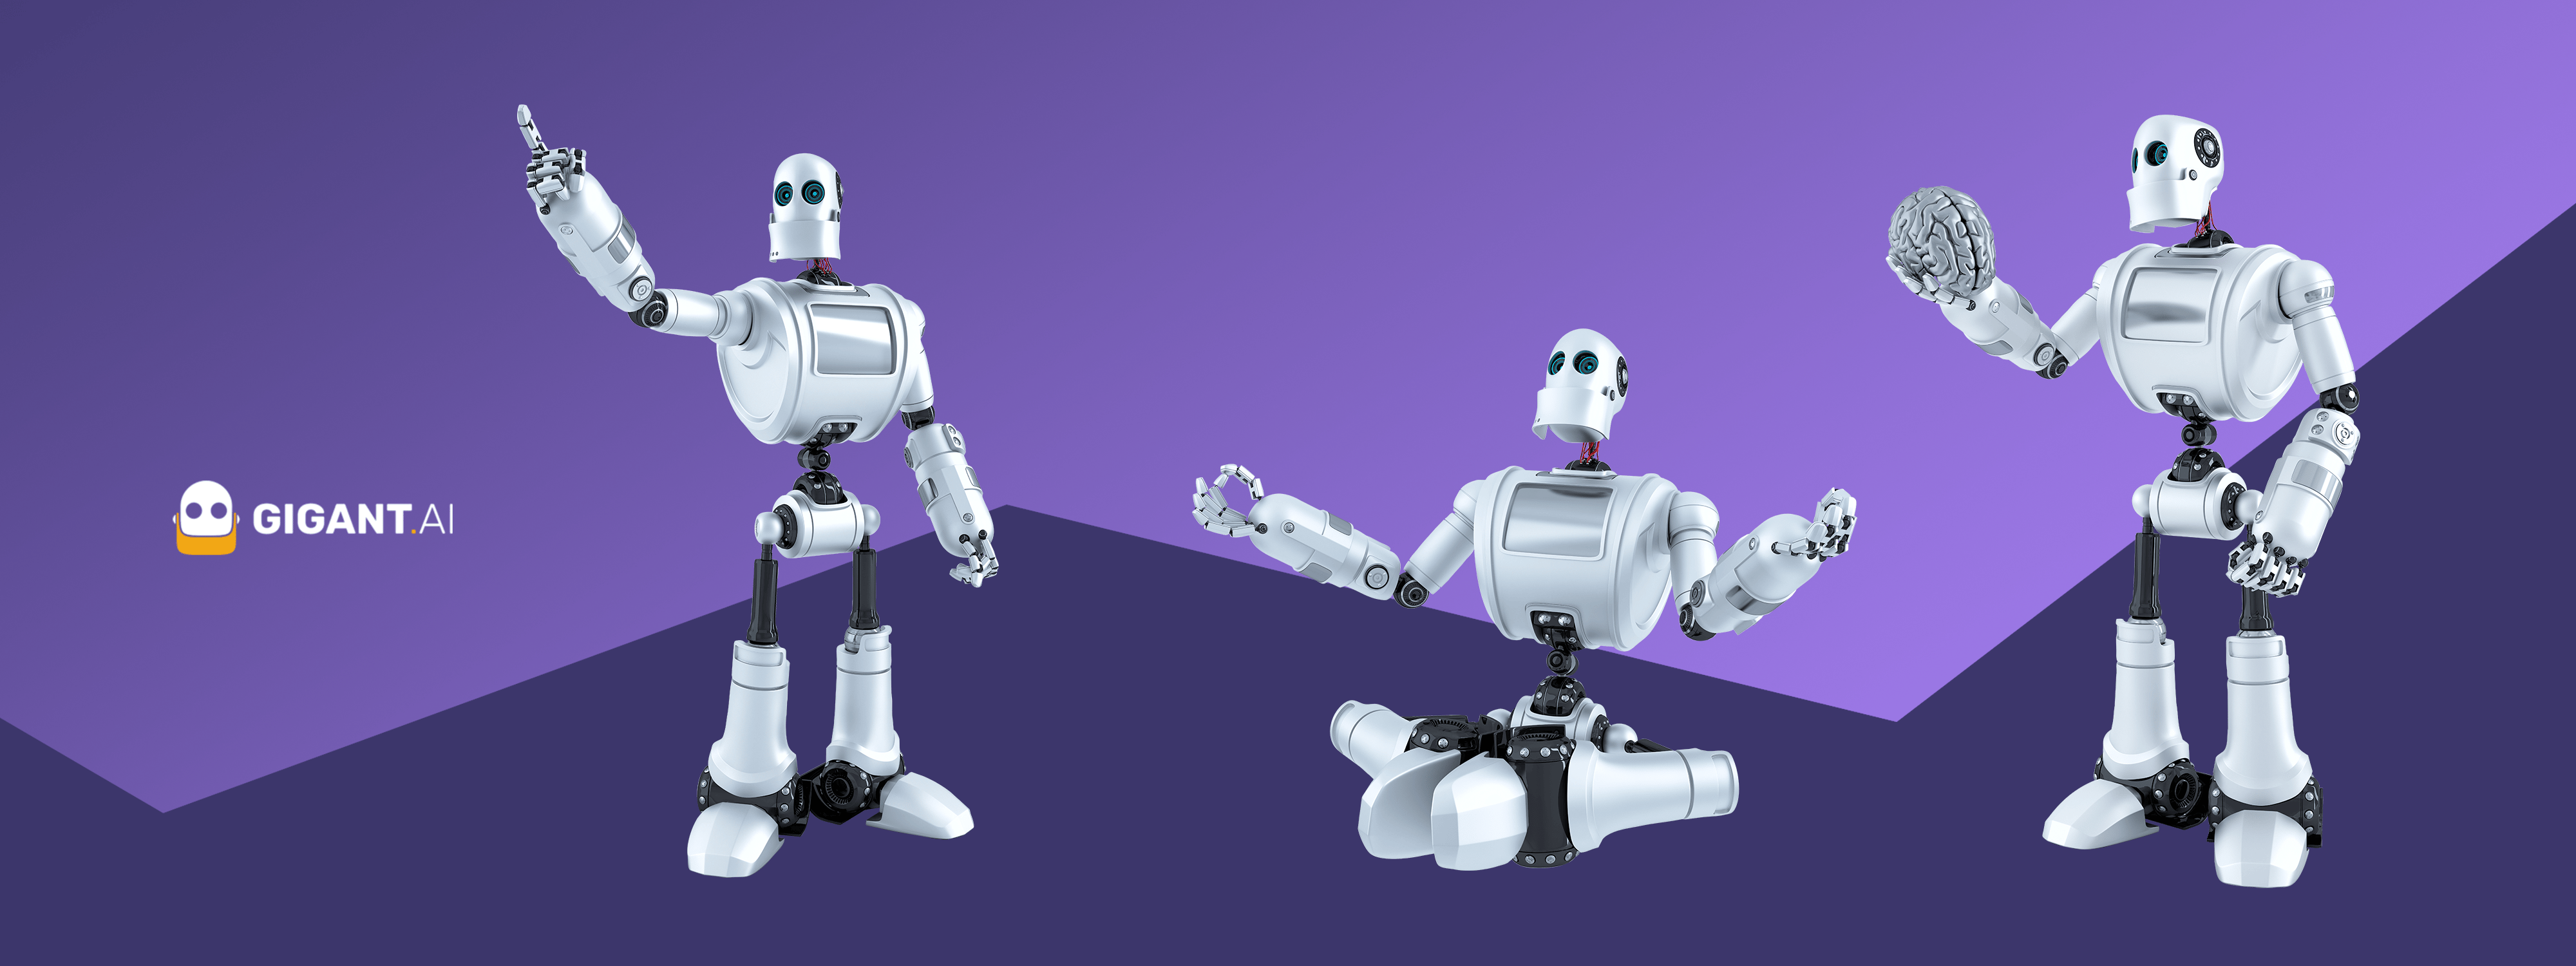 Zu sehen ist der freundliche Roboter von GIGANT.AI